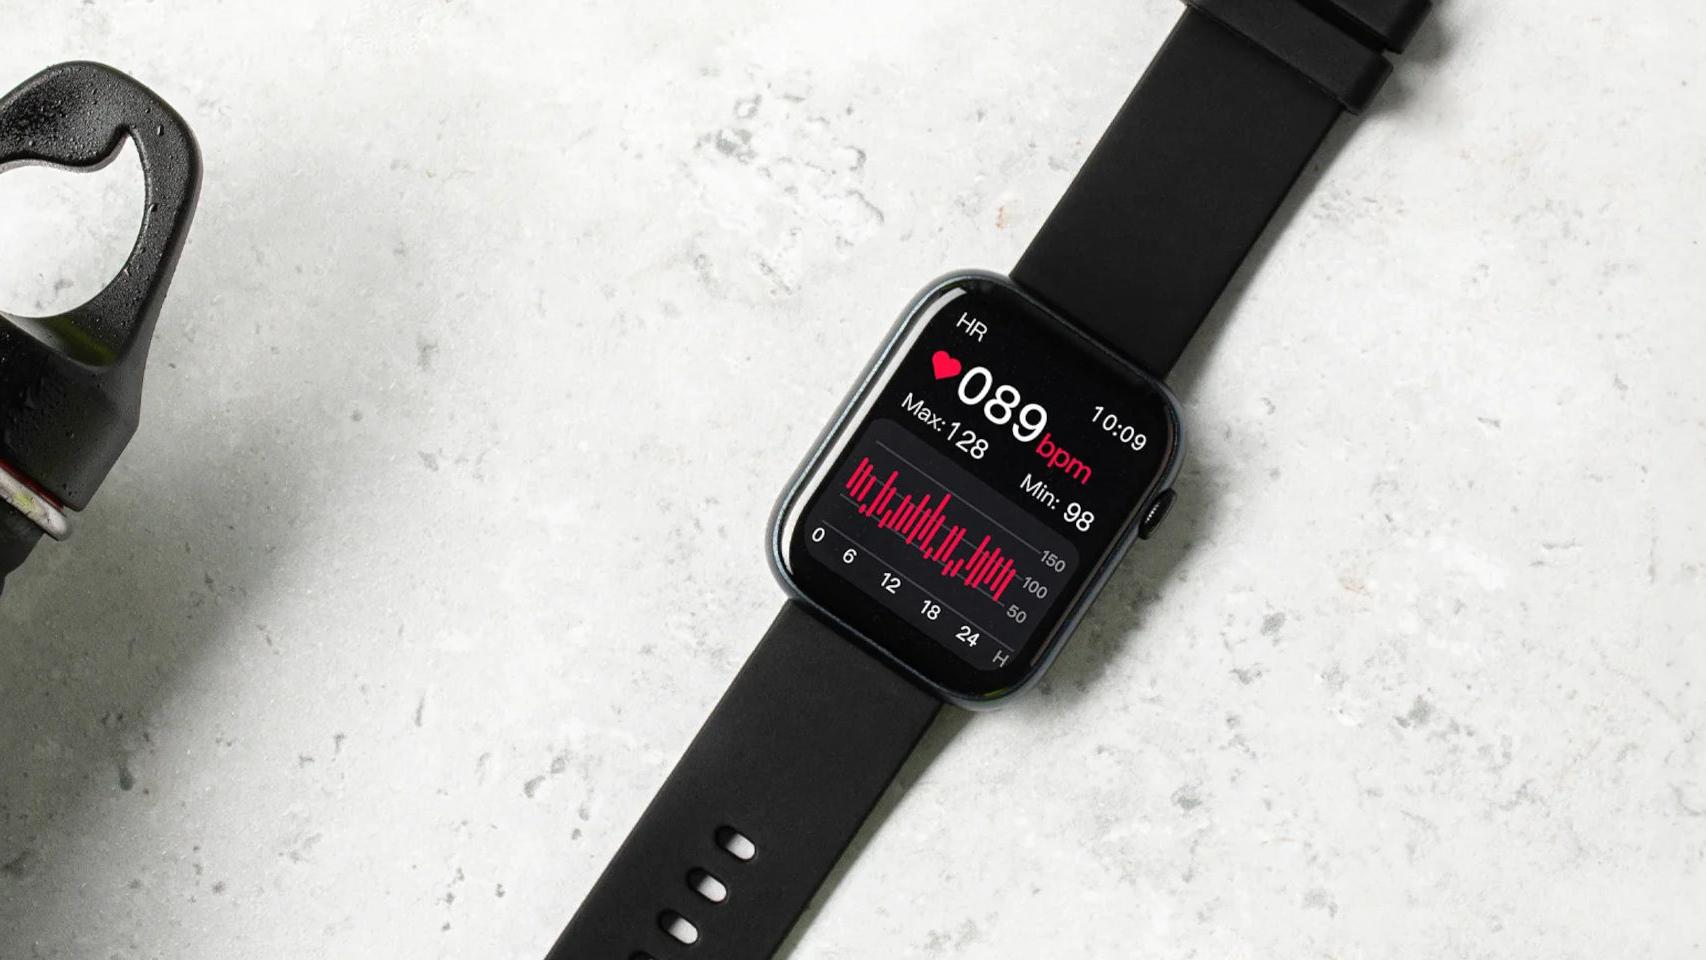 El nuevo reloj de Xiaomi llega a España: así es el Redmi Watch 3 Active  centrado en la salud y el ejercicio